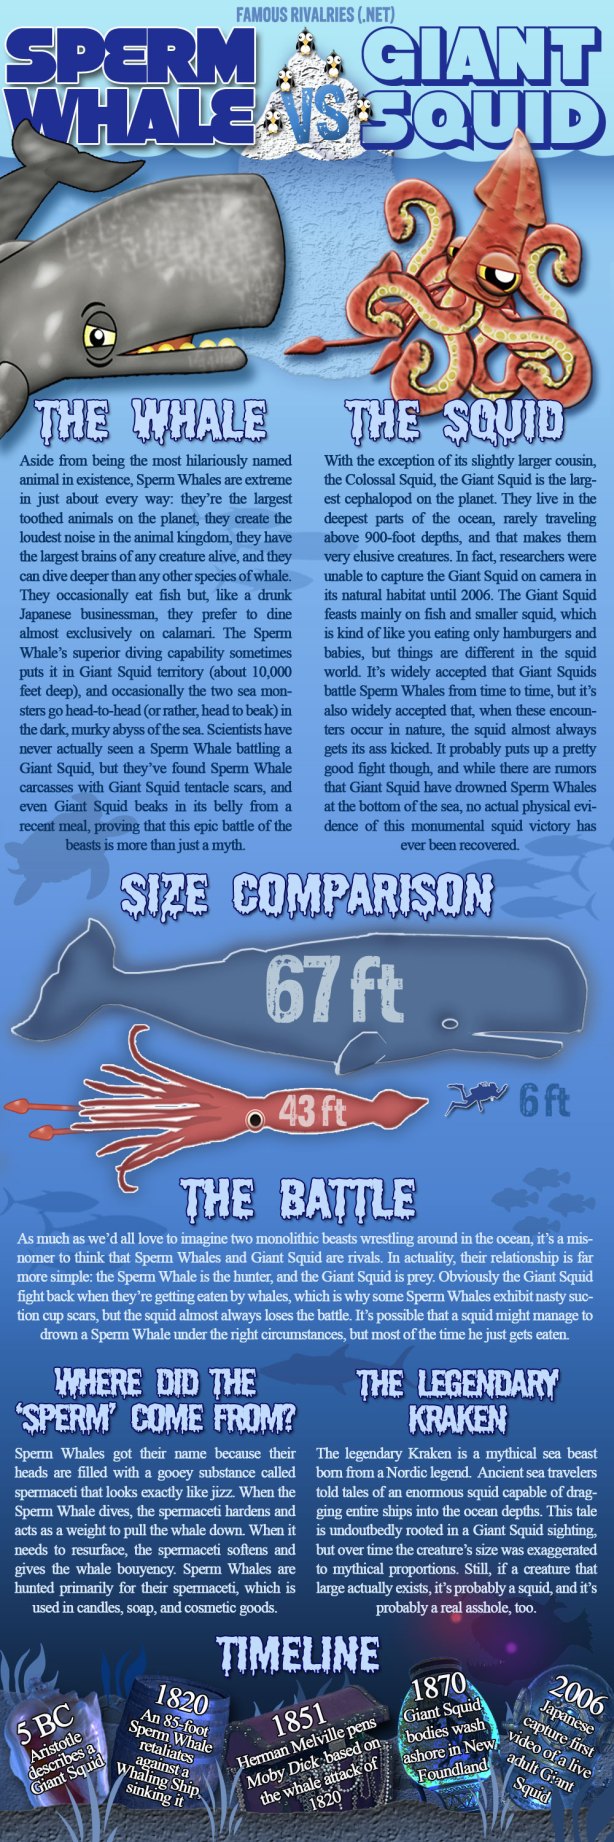 Famous Rivalries Sperm Whale vs Giant Squid